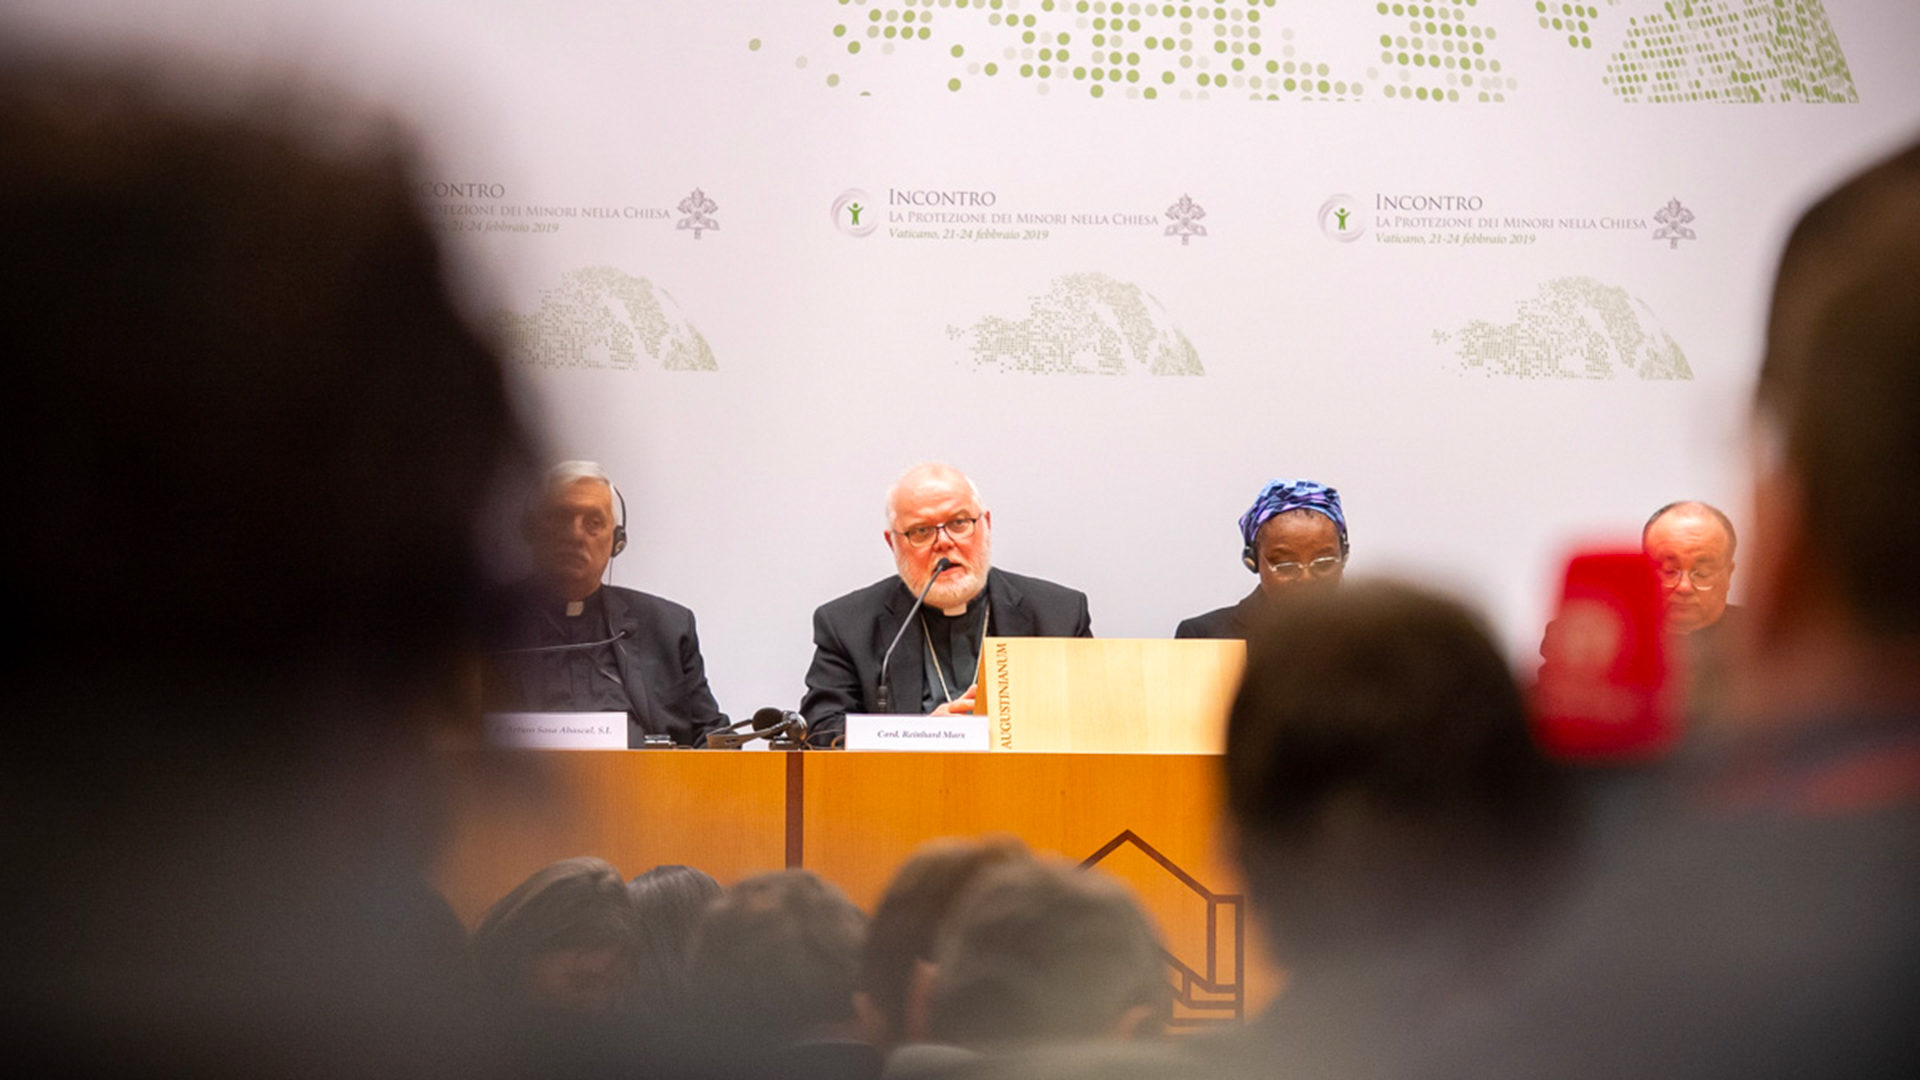 Le cardinal Reinhard Marx, président de la Conférence des évêques allemands soutient le "chemin synodal" de l'Eglise catholique en Allemagne  | © Antoine Mekary | ALETEIA | I.Media